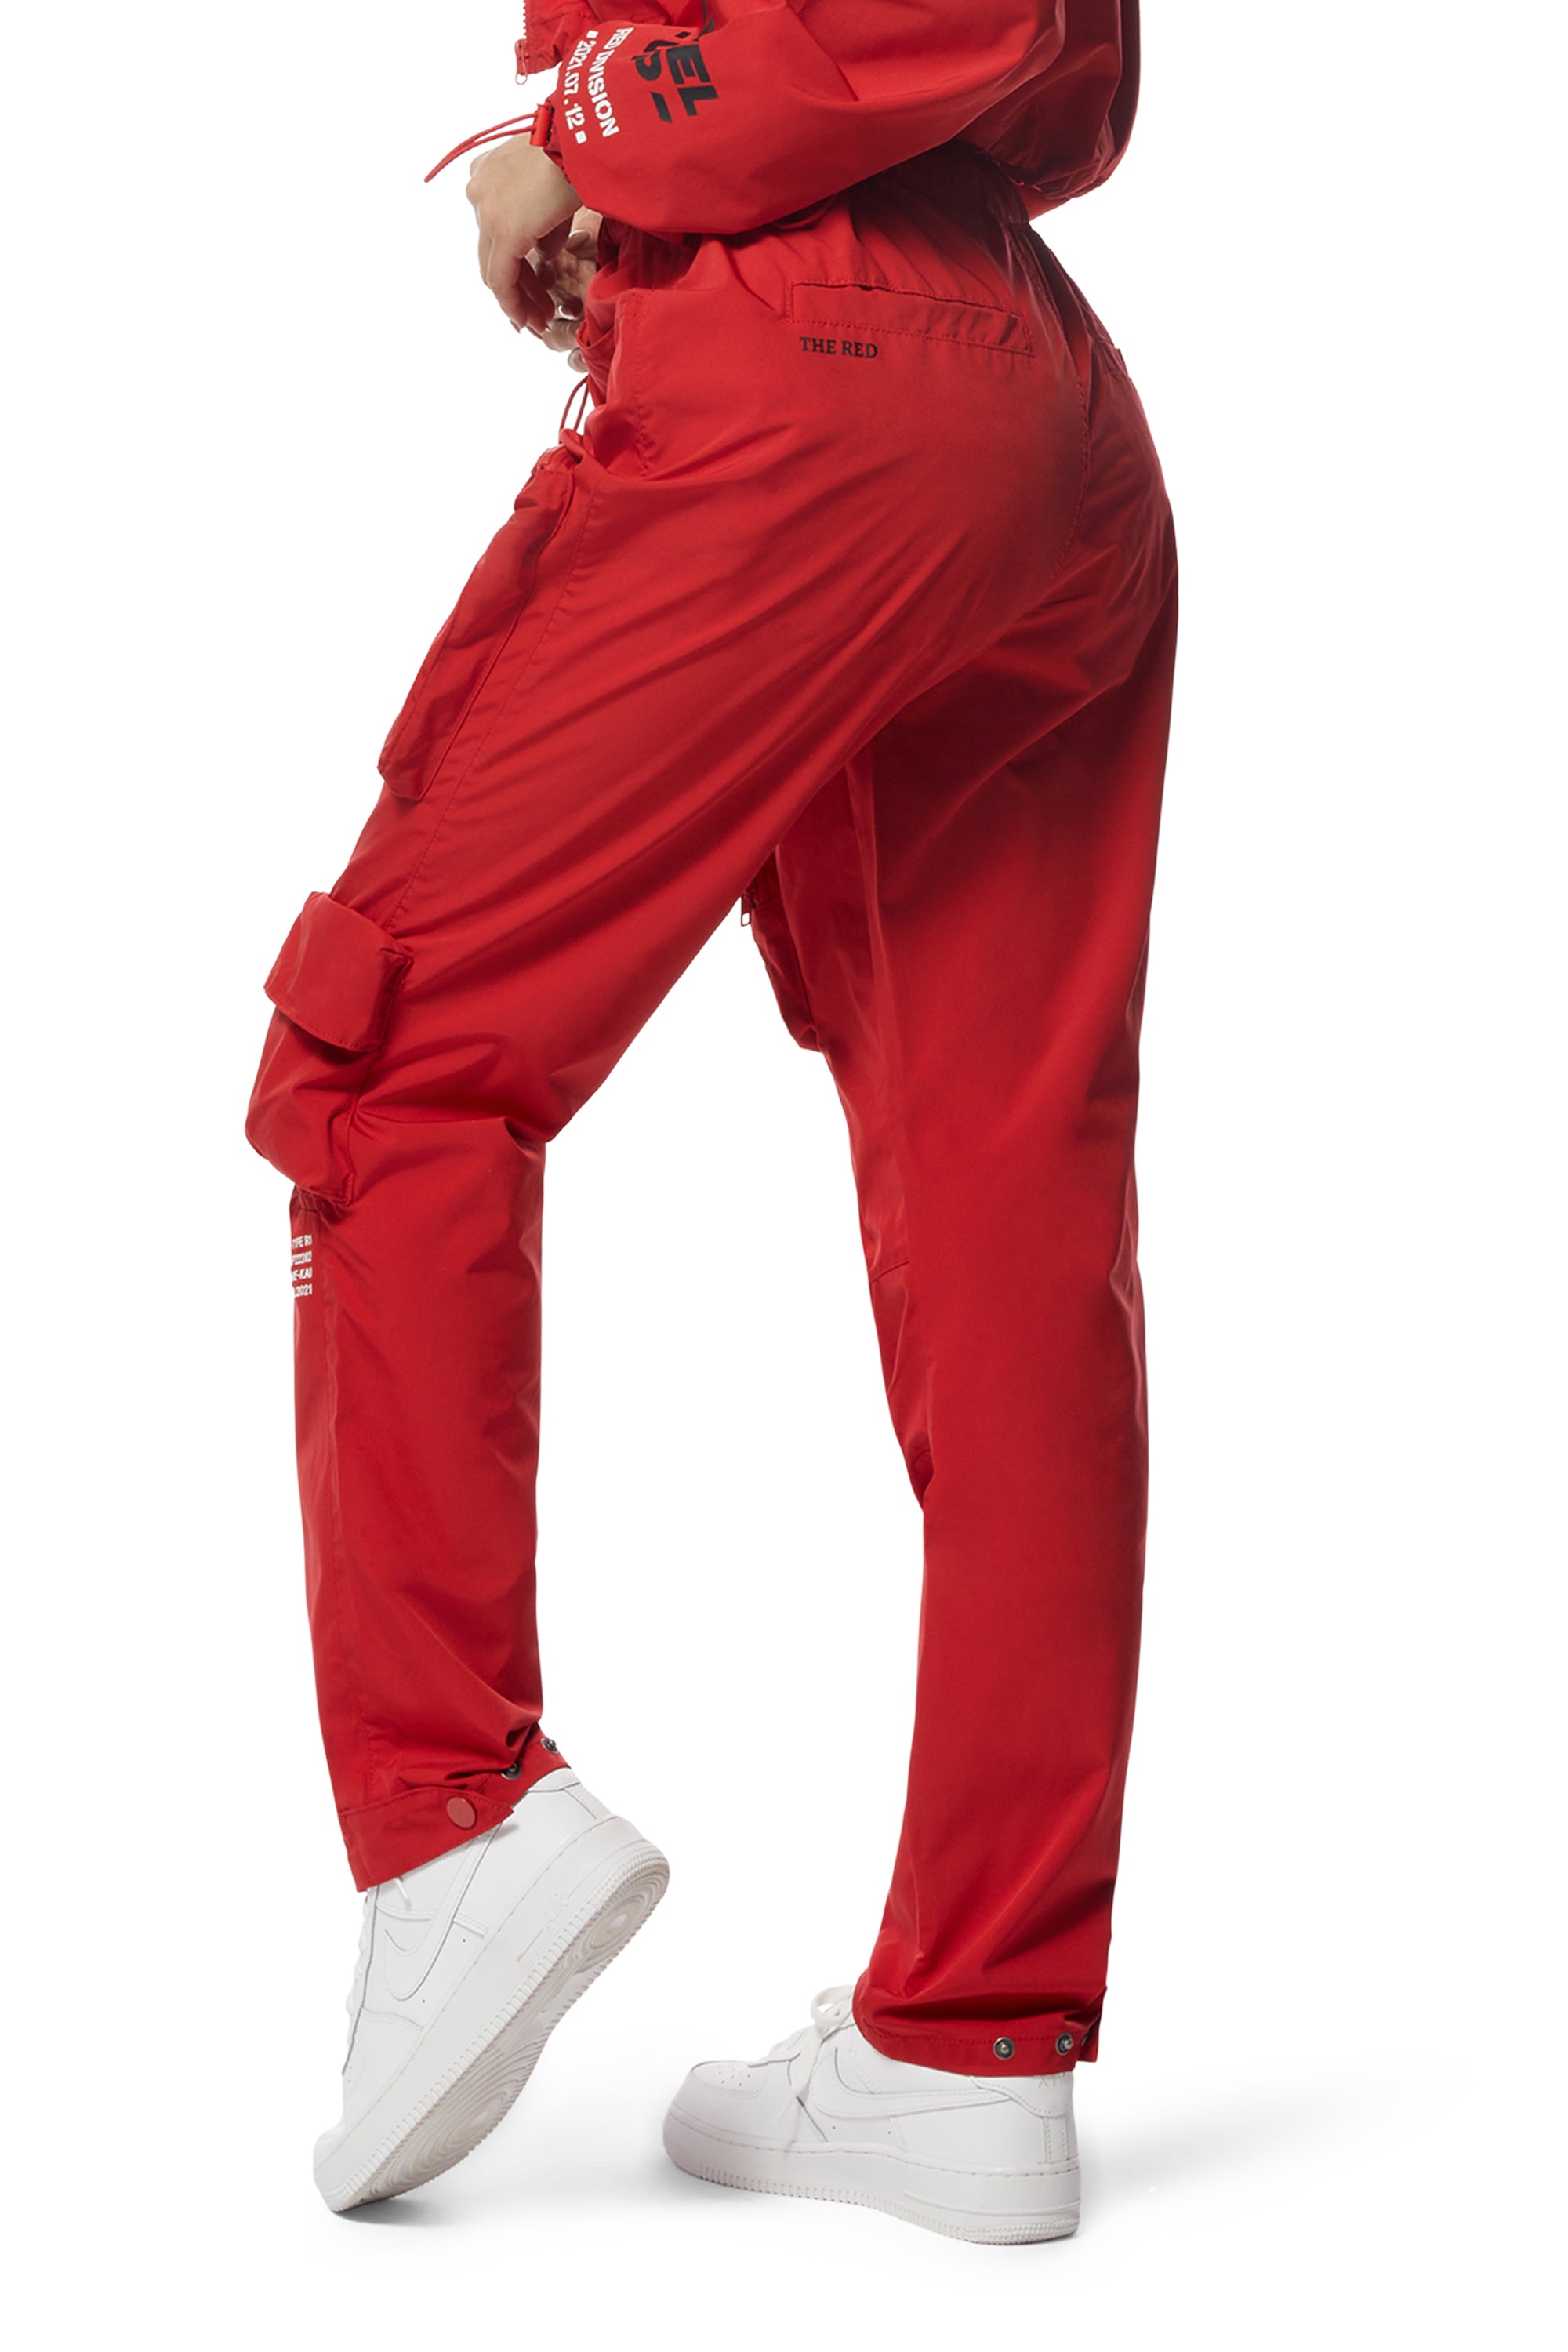 Windbreaker Relaxed Slouch Cargo Pants - True Red